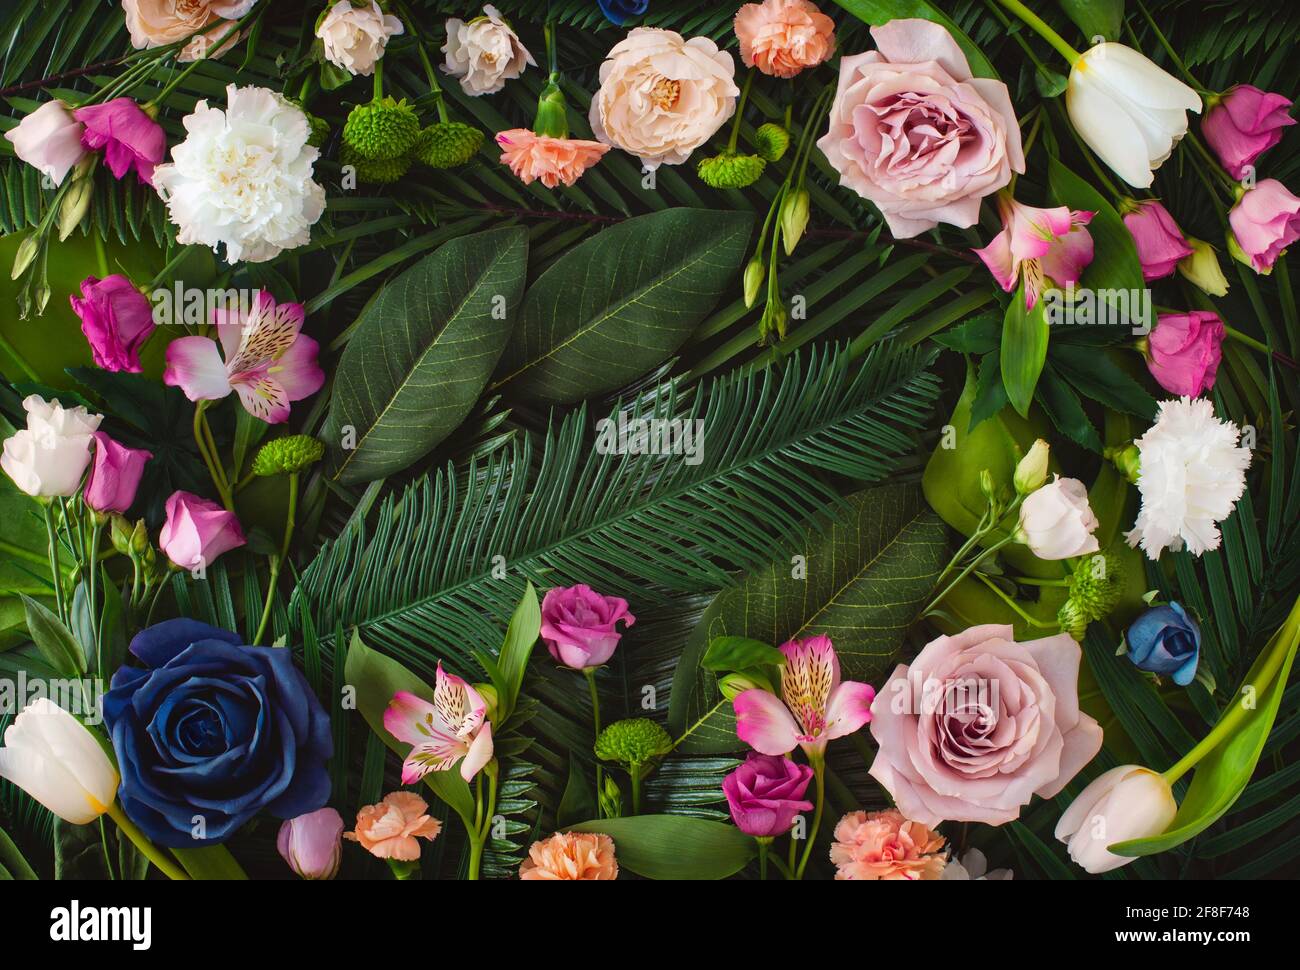 Décor créatif composé de fleurs d'été colorées et de feuilles vertes. Concept de la nature. Carte de vœux à motif fleuri. Fond de fleur de printemps vibrant. Banque D'Images